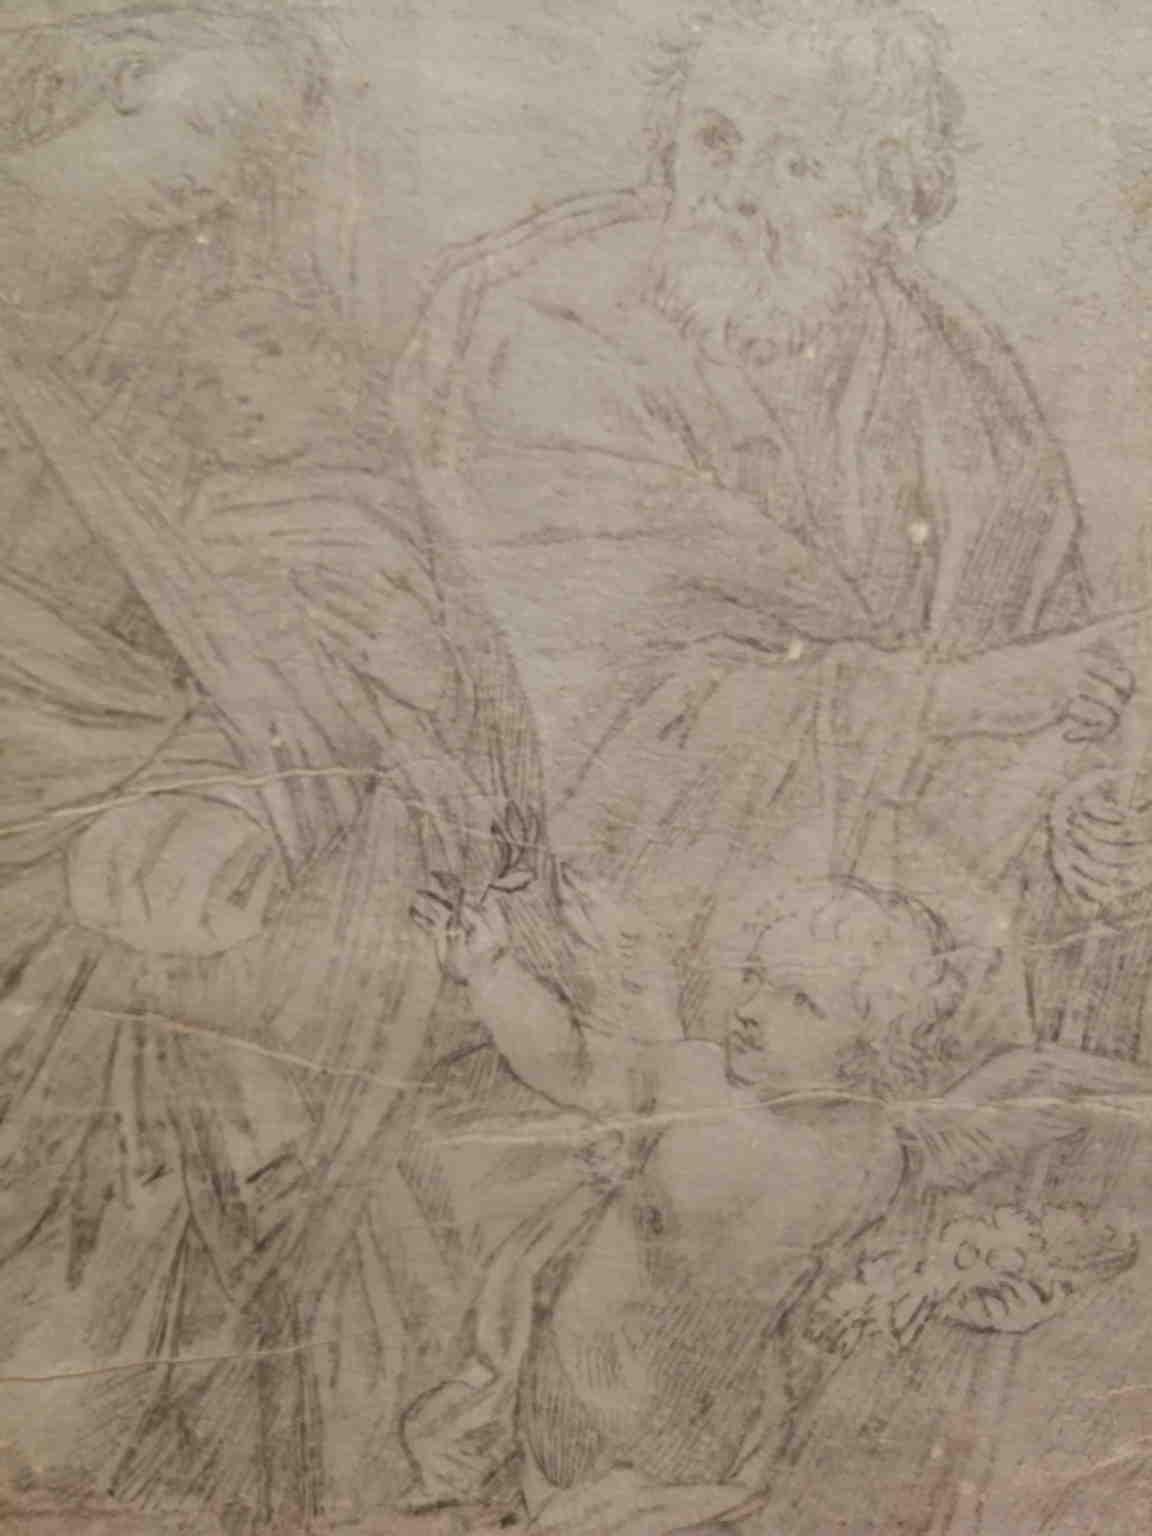 D'après un dessin figuratif religieux de Guido Reni, papier vergé crayonné du XIXe siècle